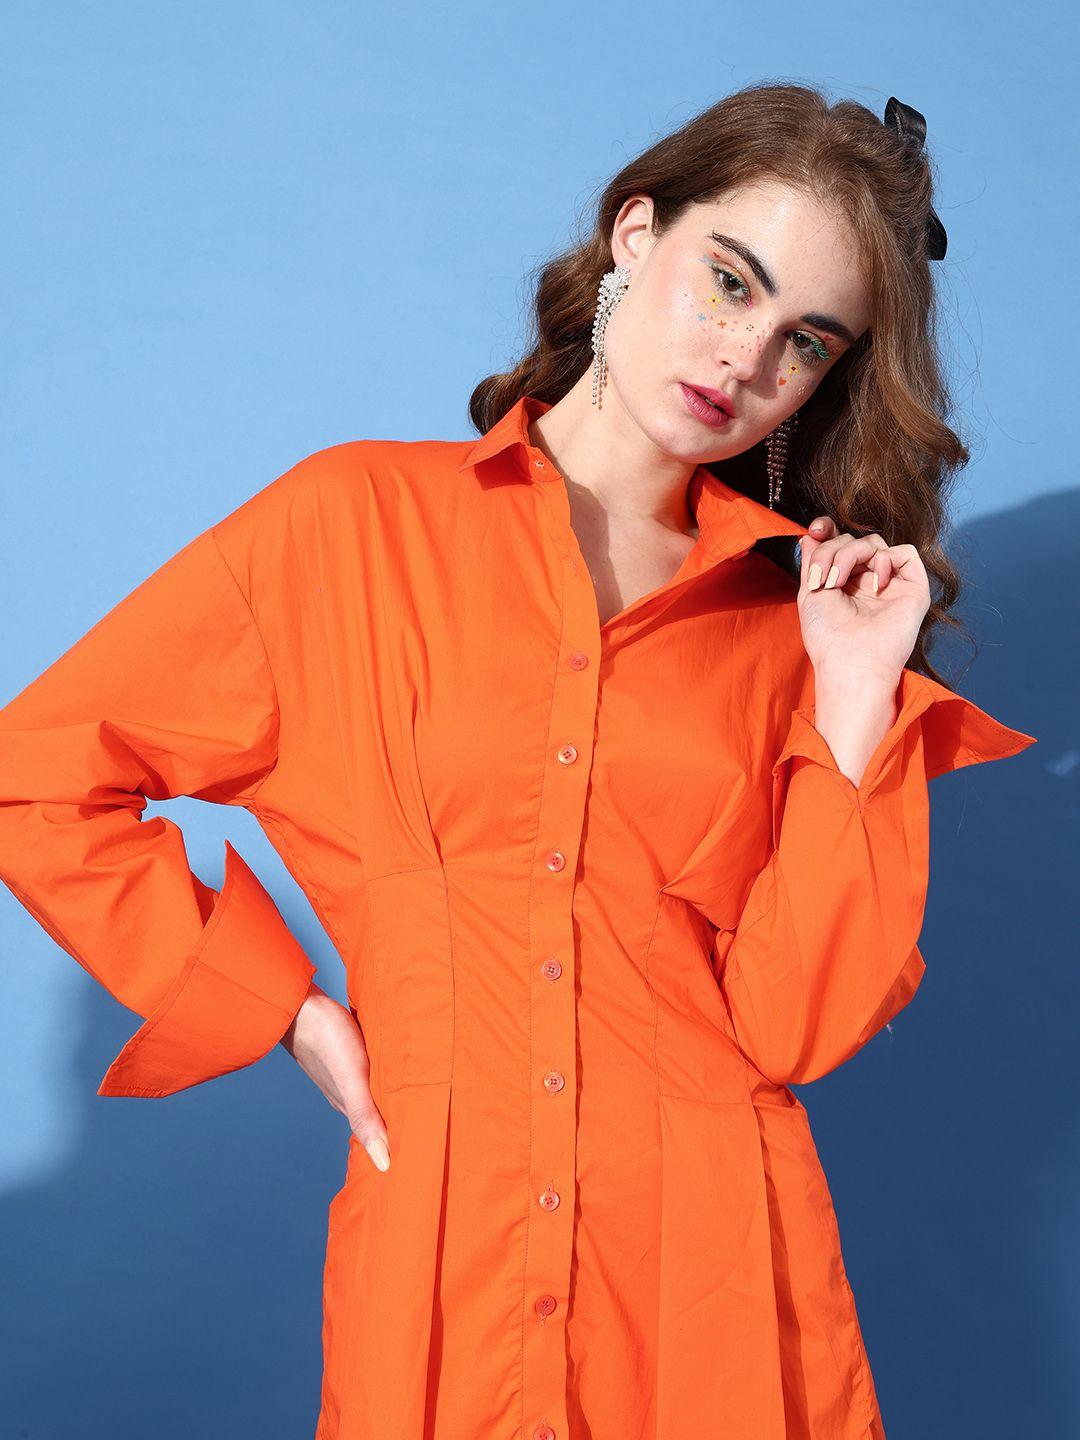 stylecast x hersheinbox women orange solid statement collar dress